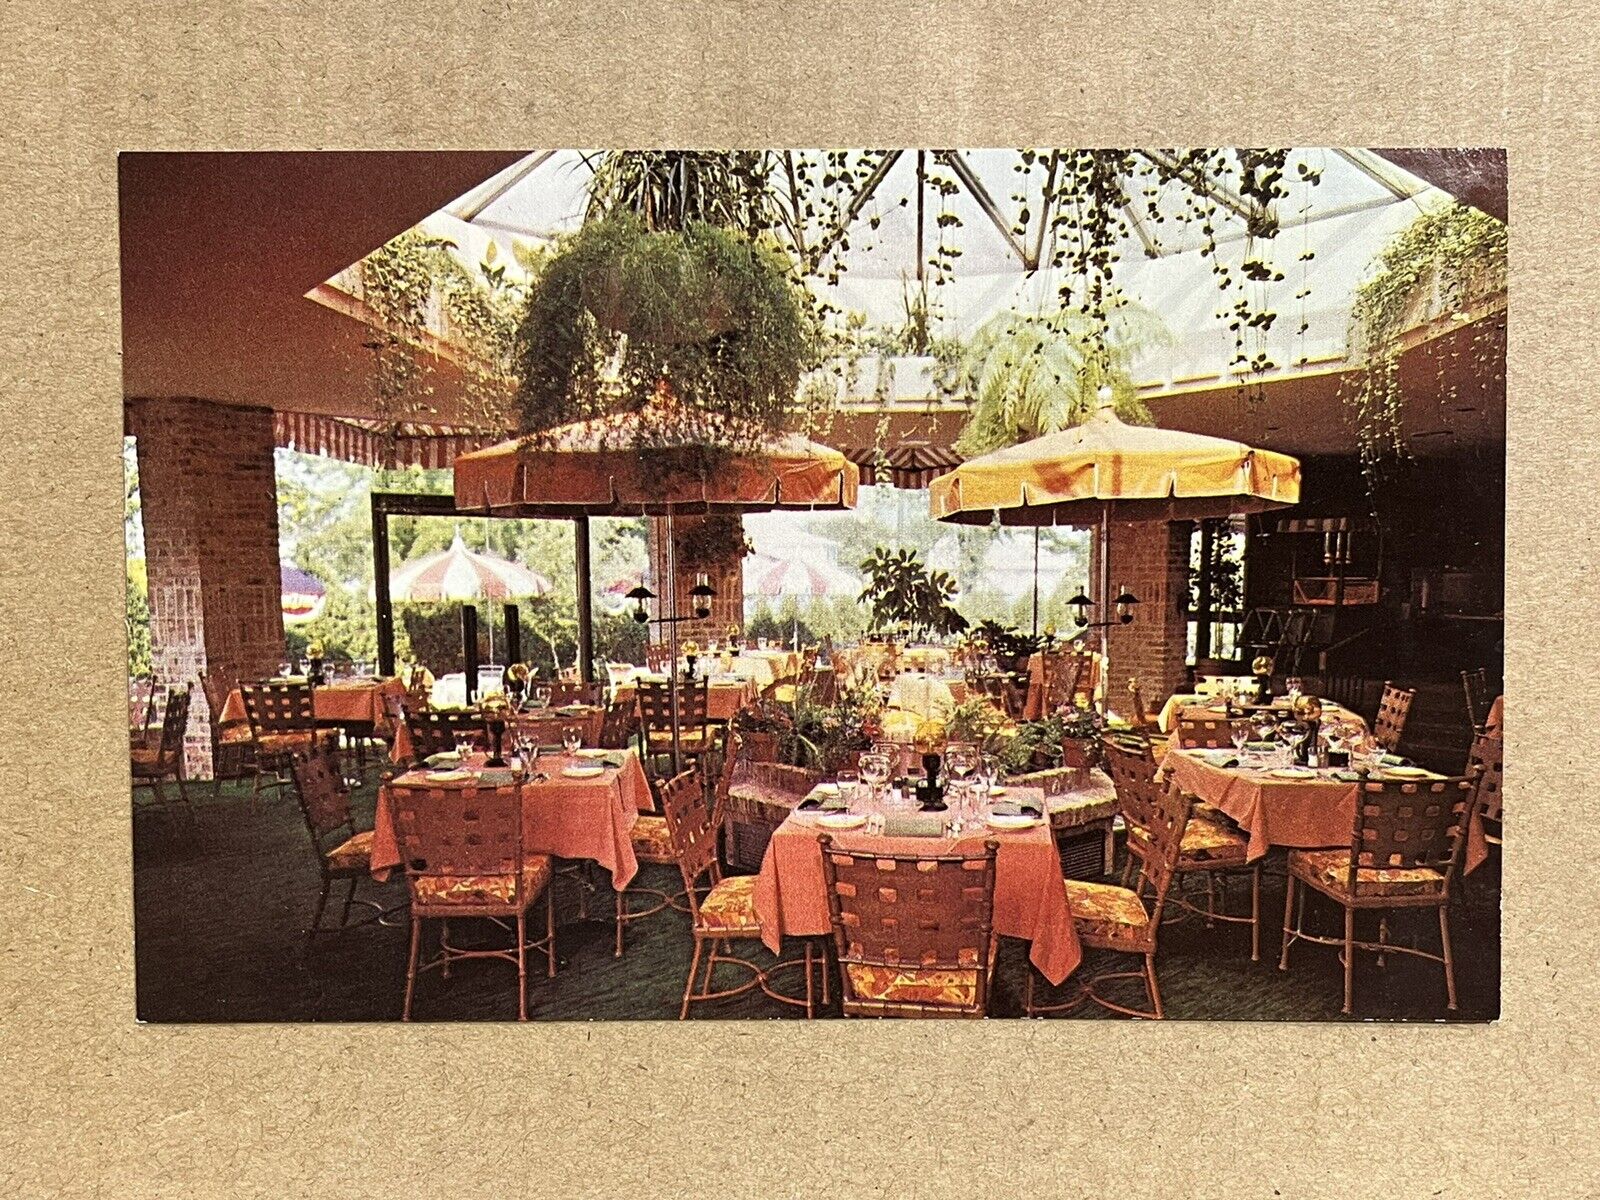 Postcard Skokie Illinois Tower Garden Restaurant Interior Old Vintage PC